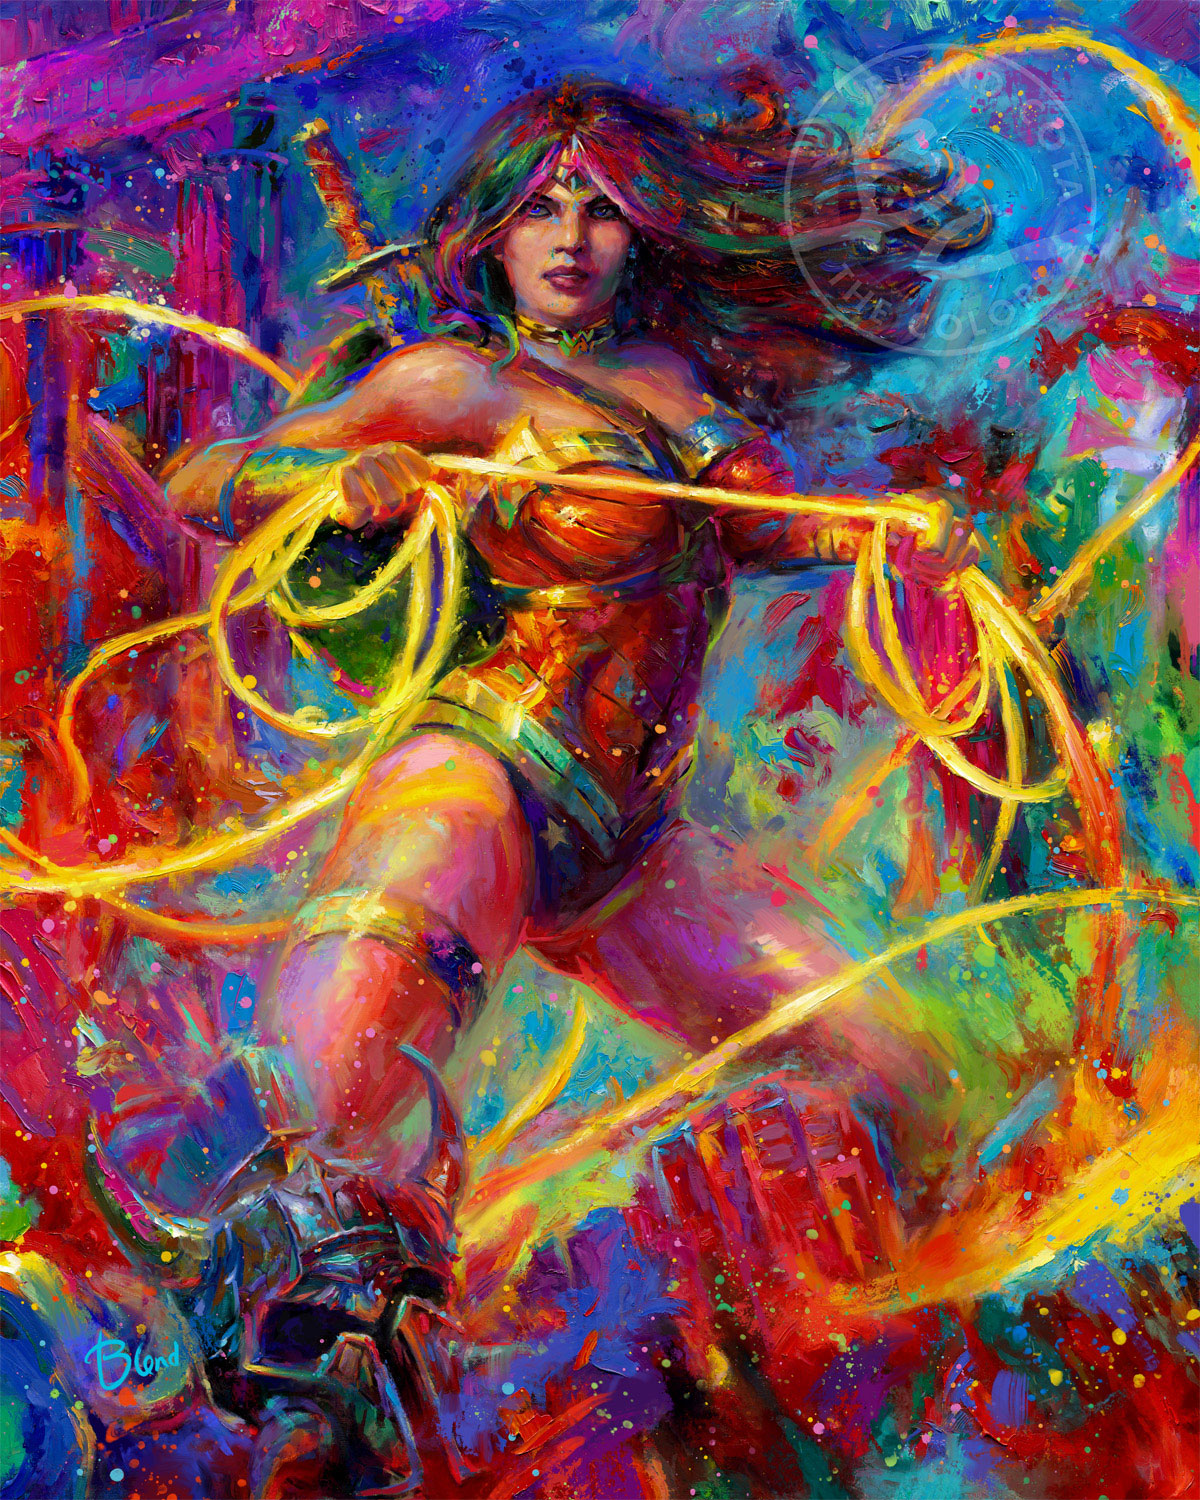 Wonder Woman - Themyscira's Champion